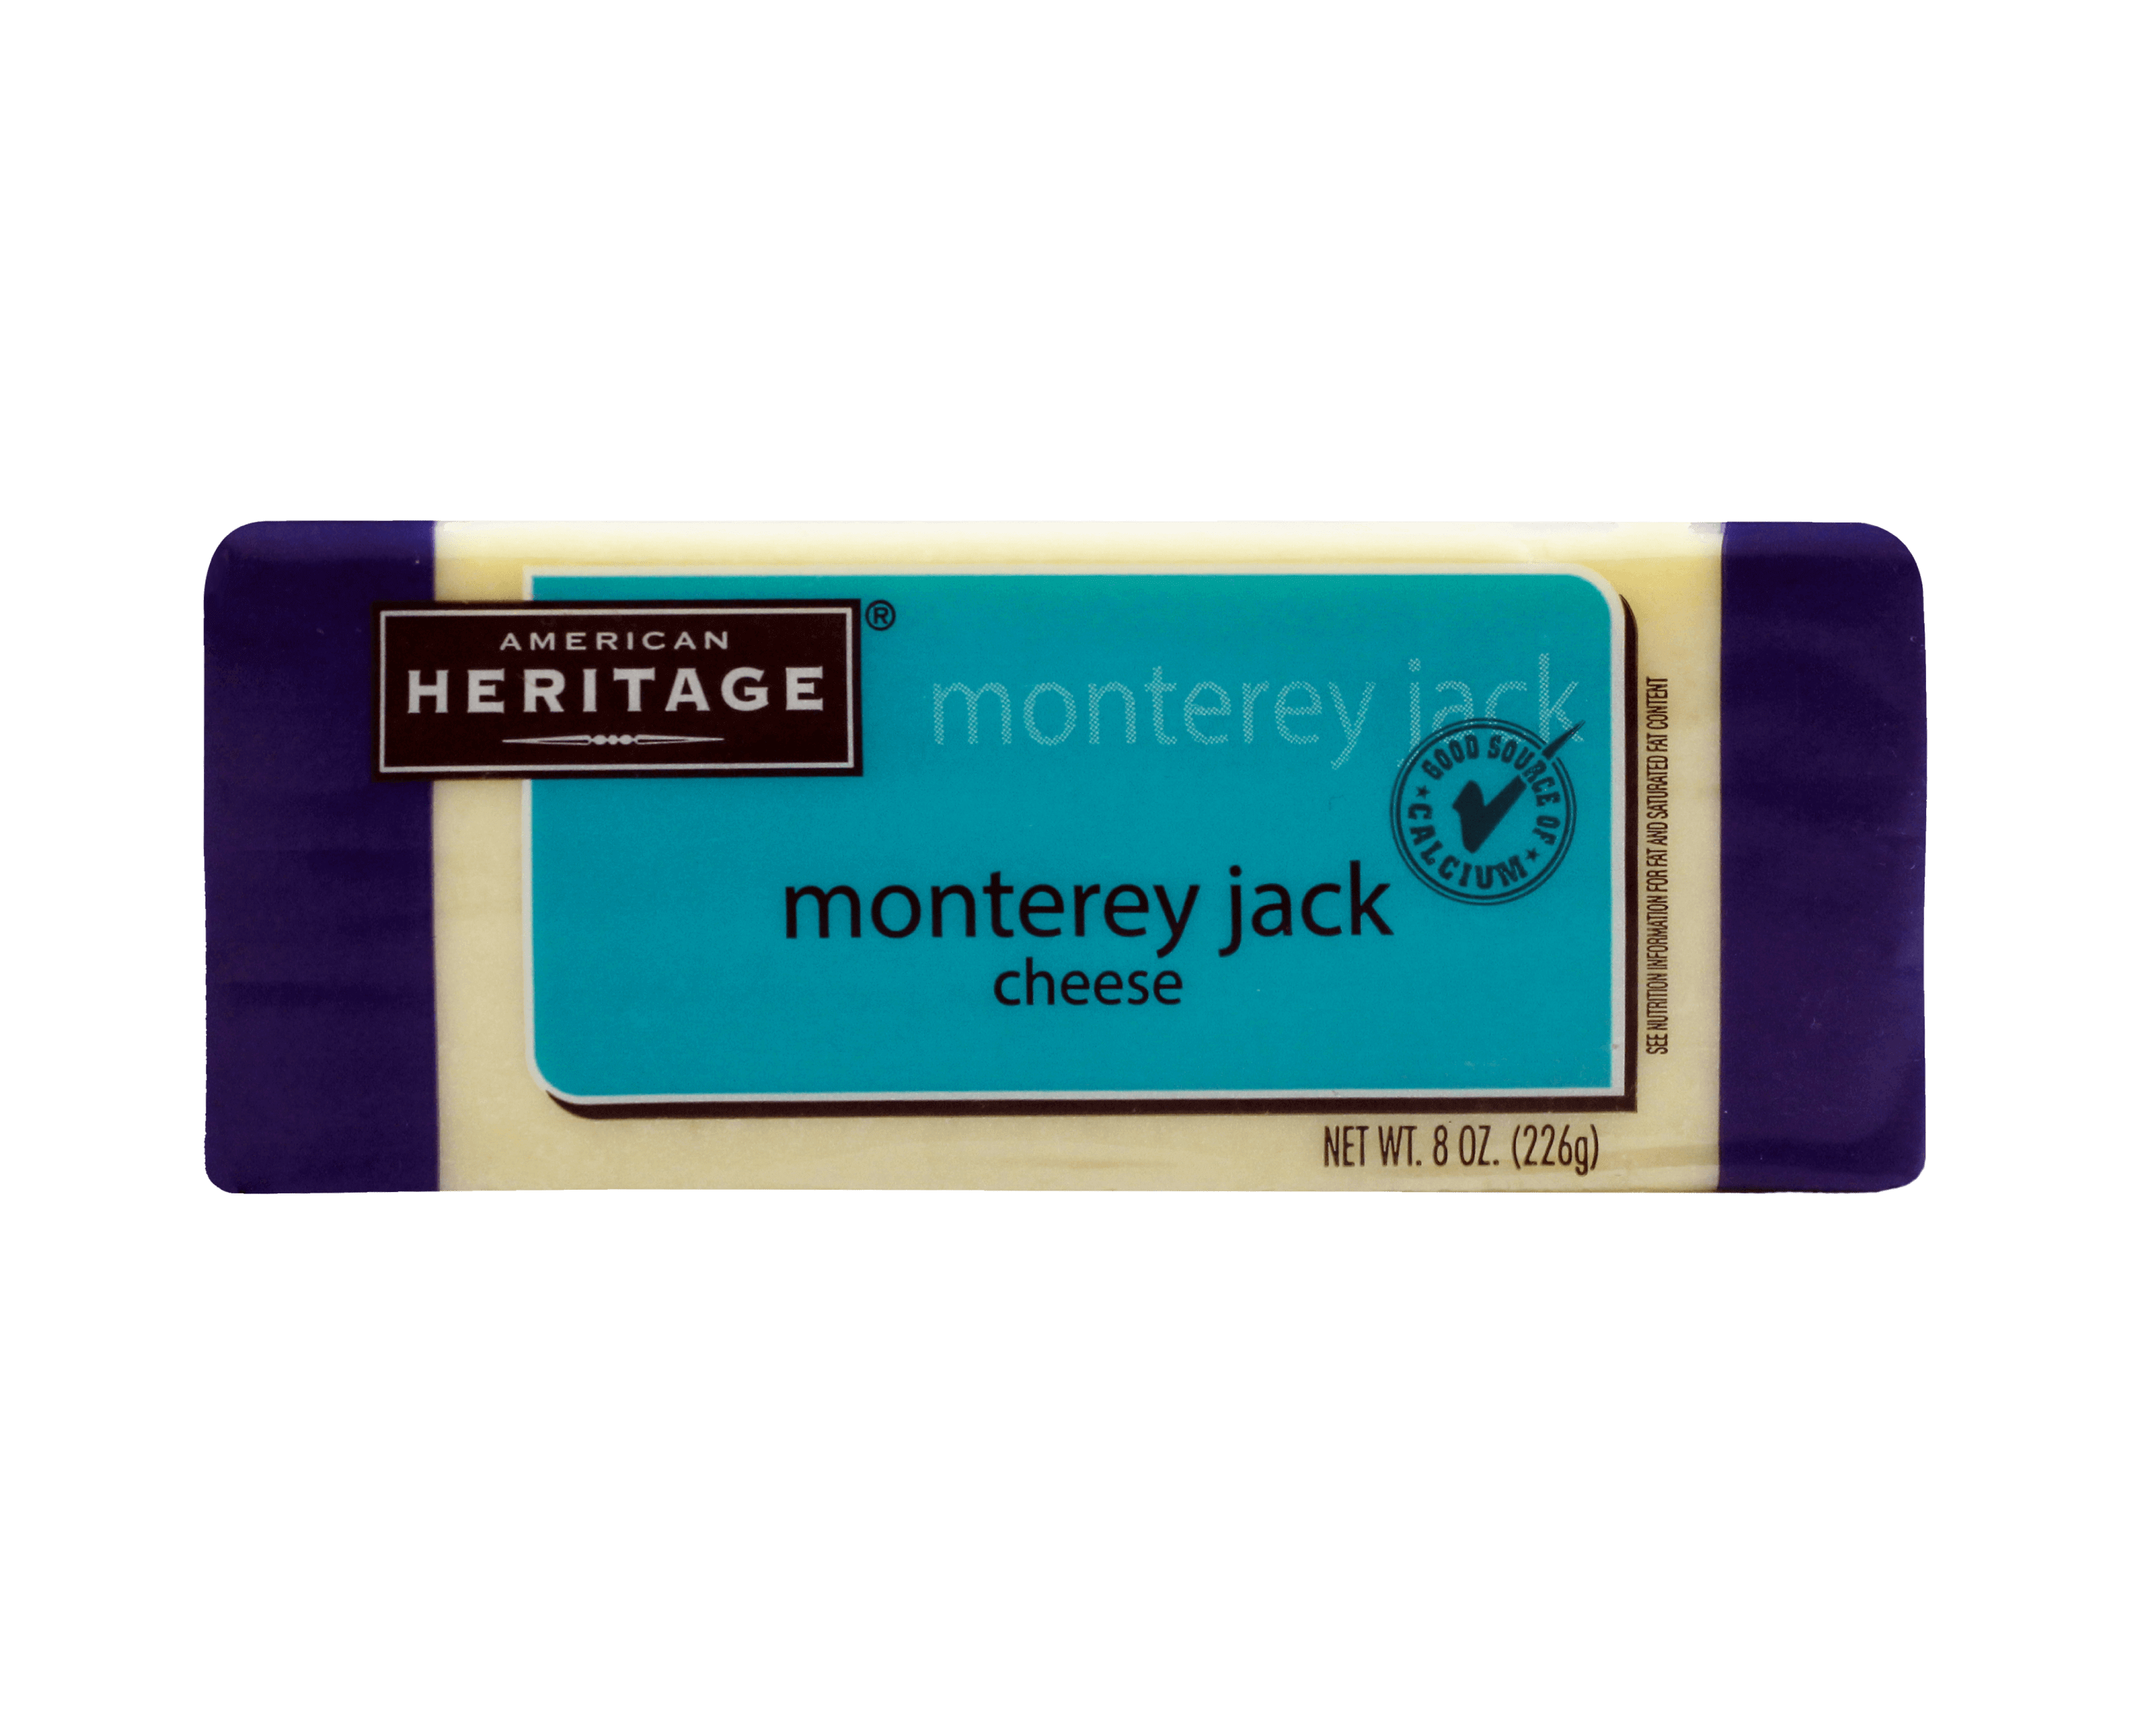 American Heritage Monterey Jack Cheese 好焗蒙特力傑克乾酪塊